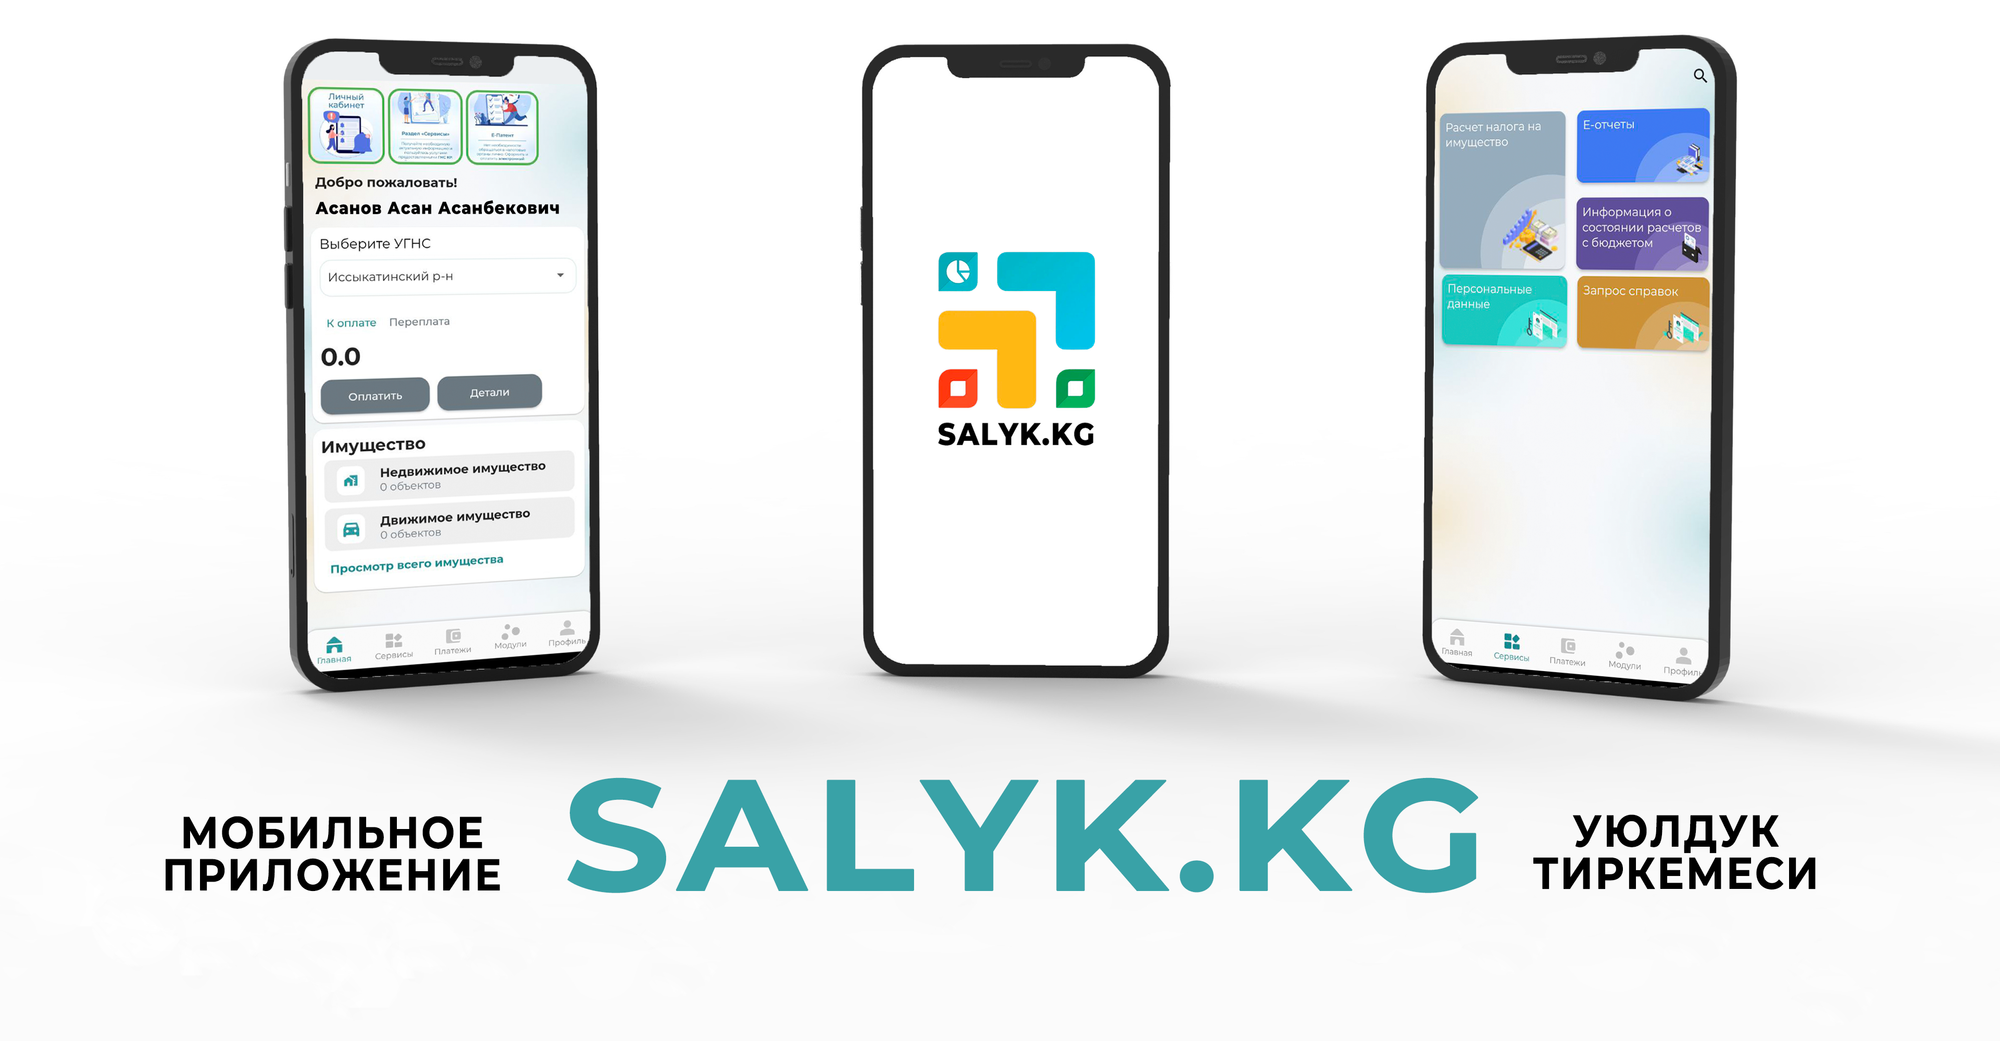 Мобильное приложение Salyk.kg скачали более 34 тысяч раз